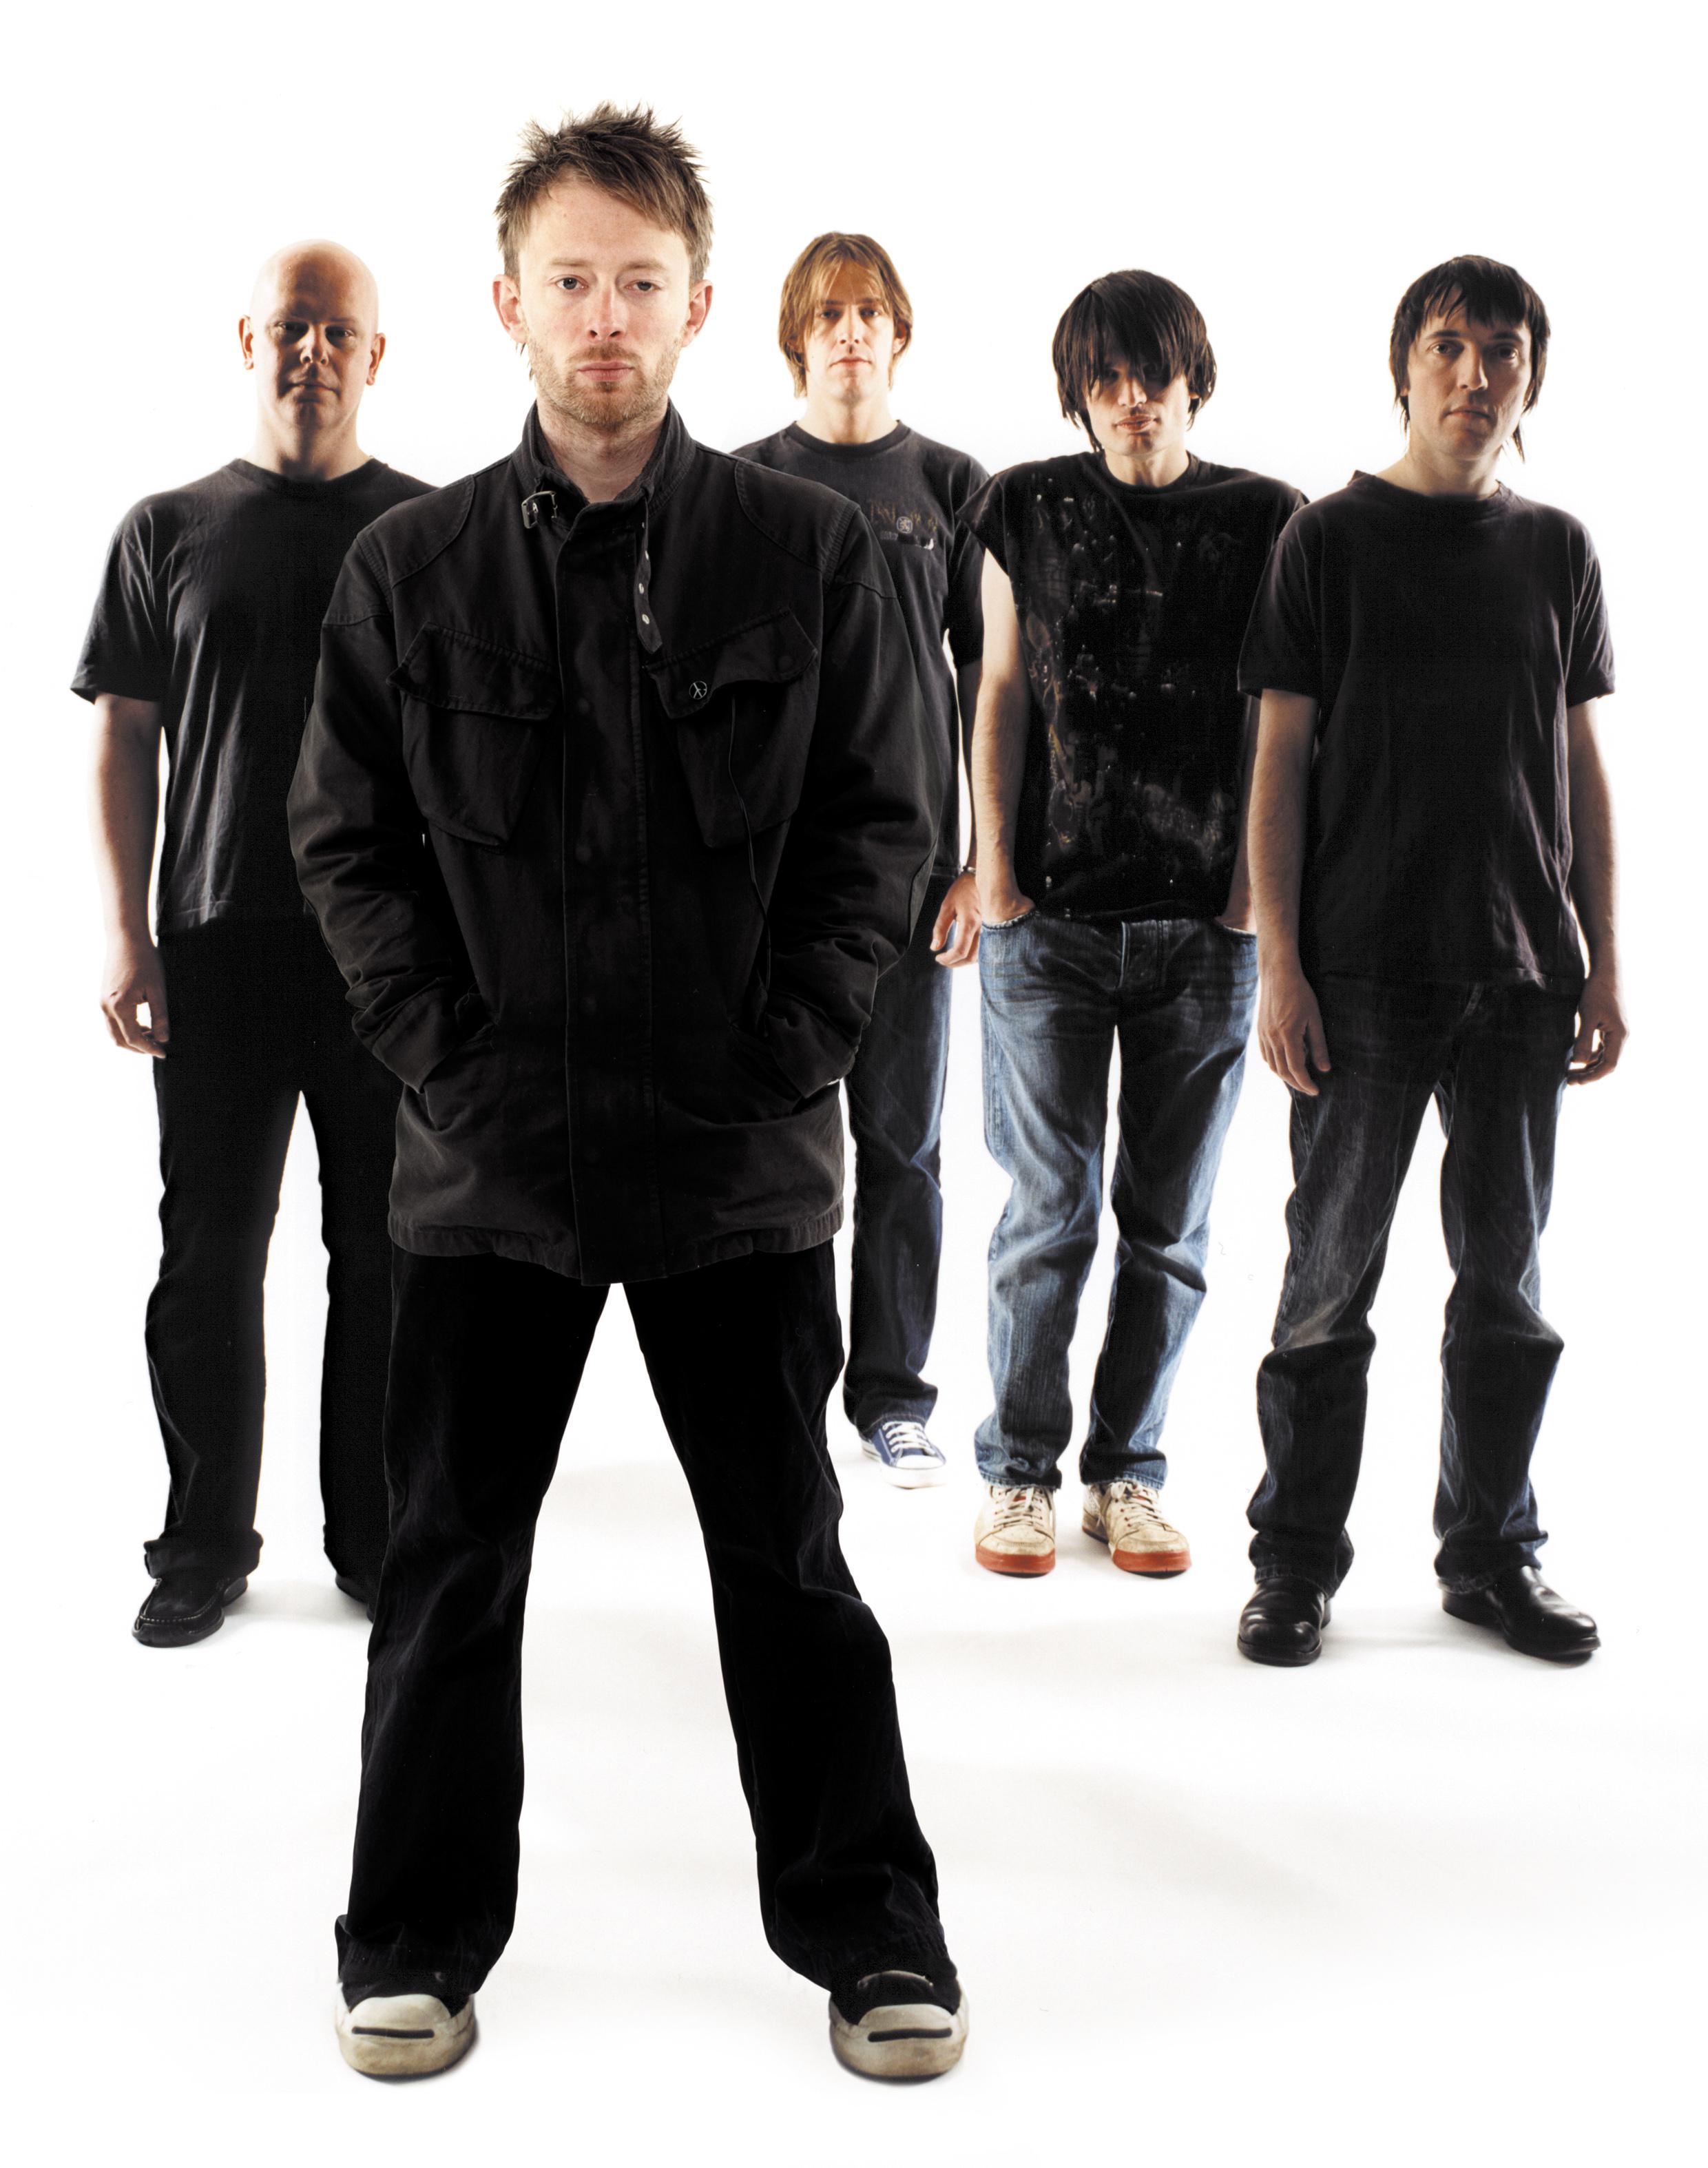 Radiohead picture